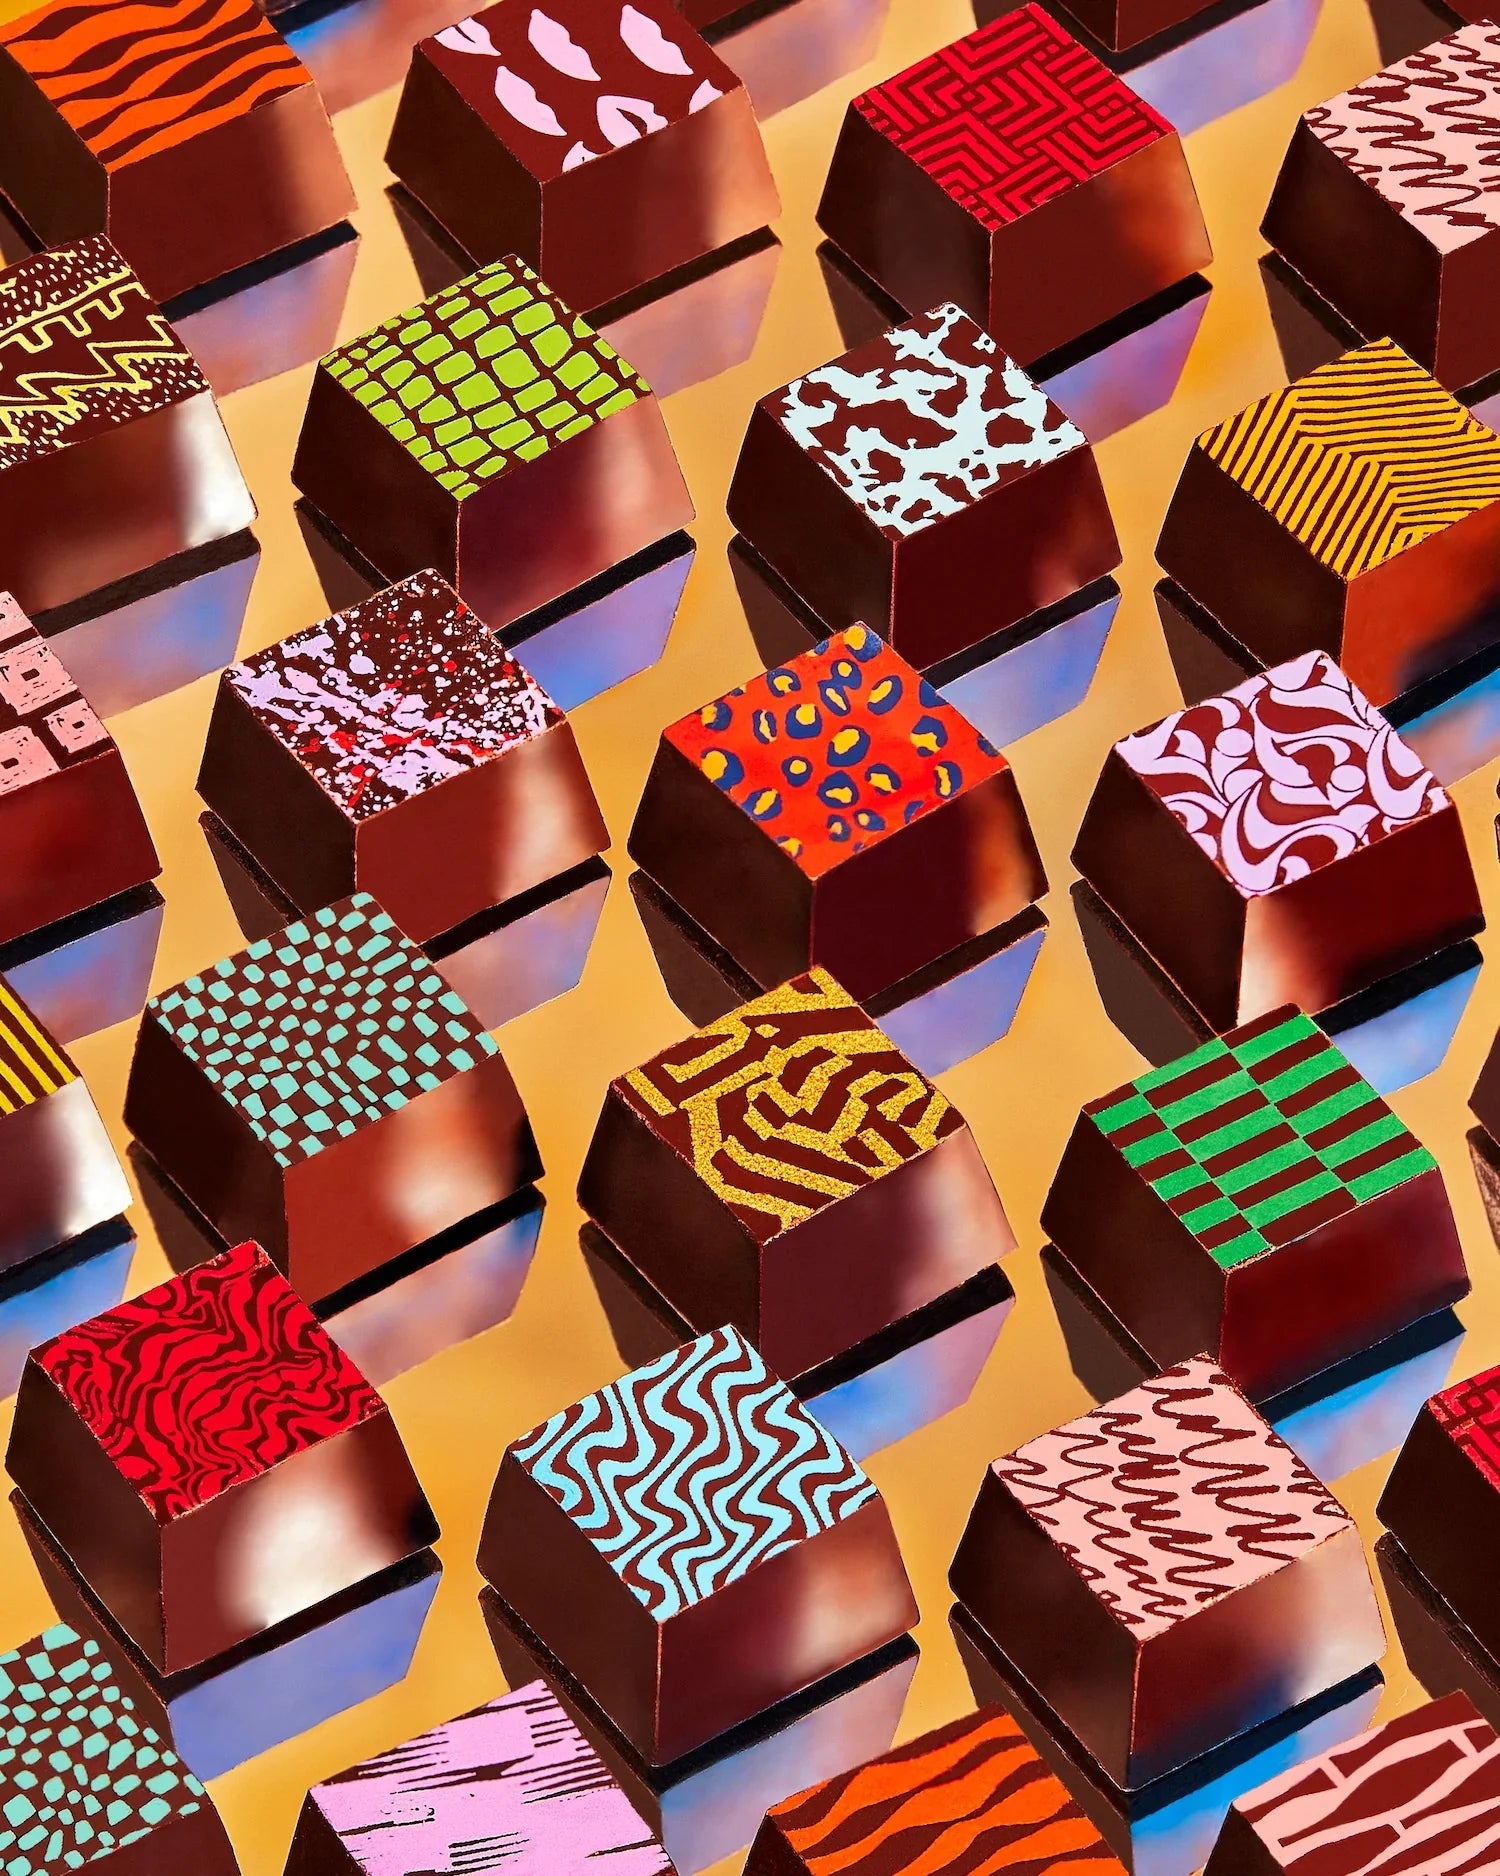 Compartes Arabia - Middle East and Dubai - Chocolate Truffles